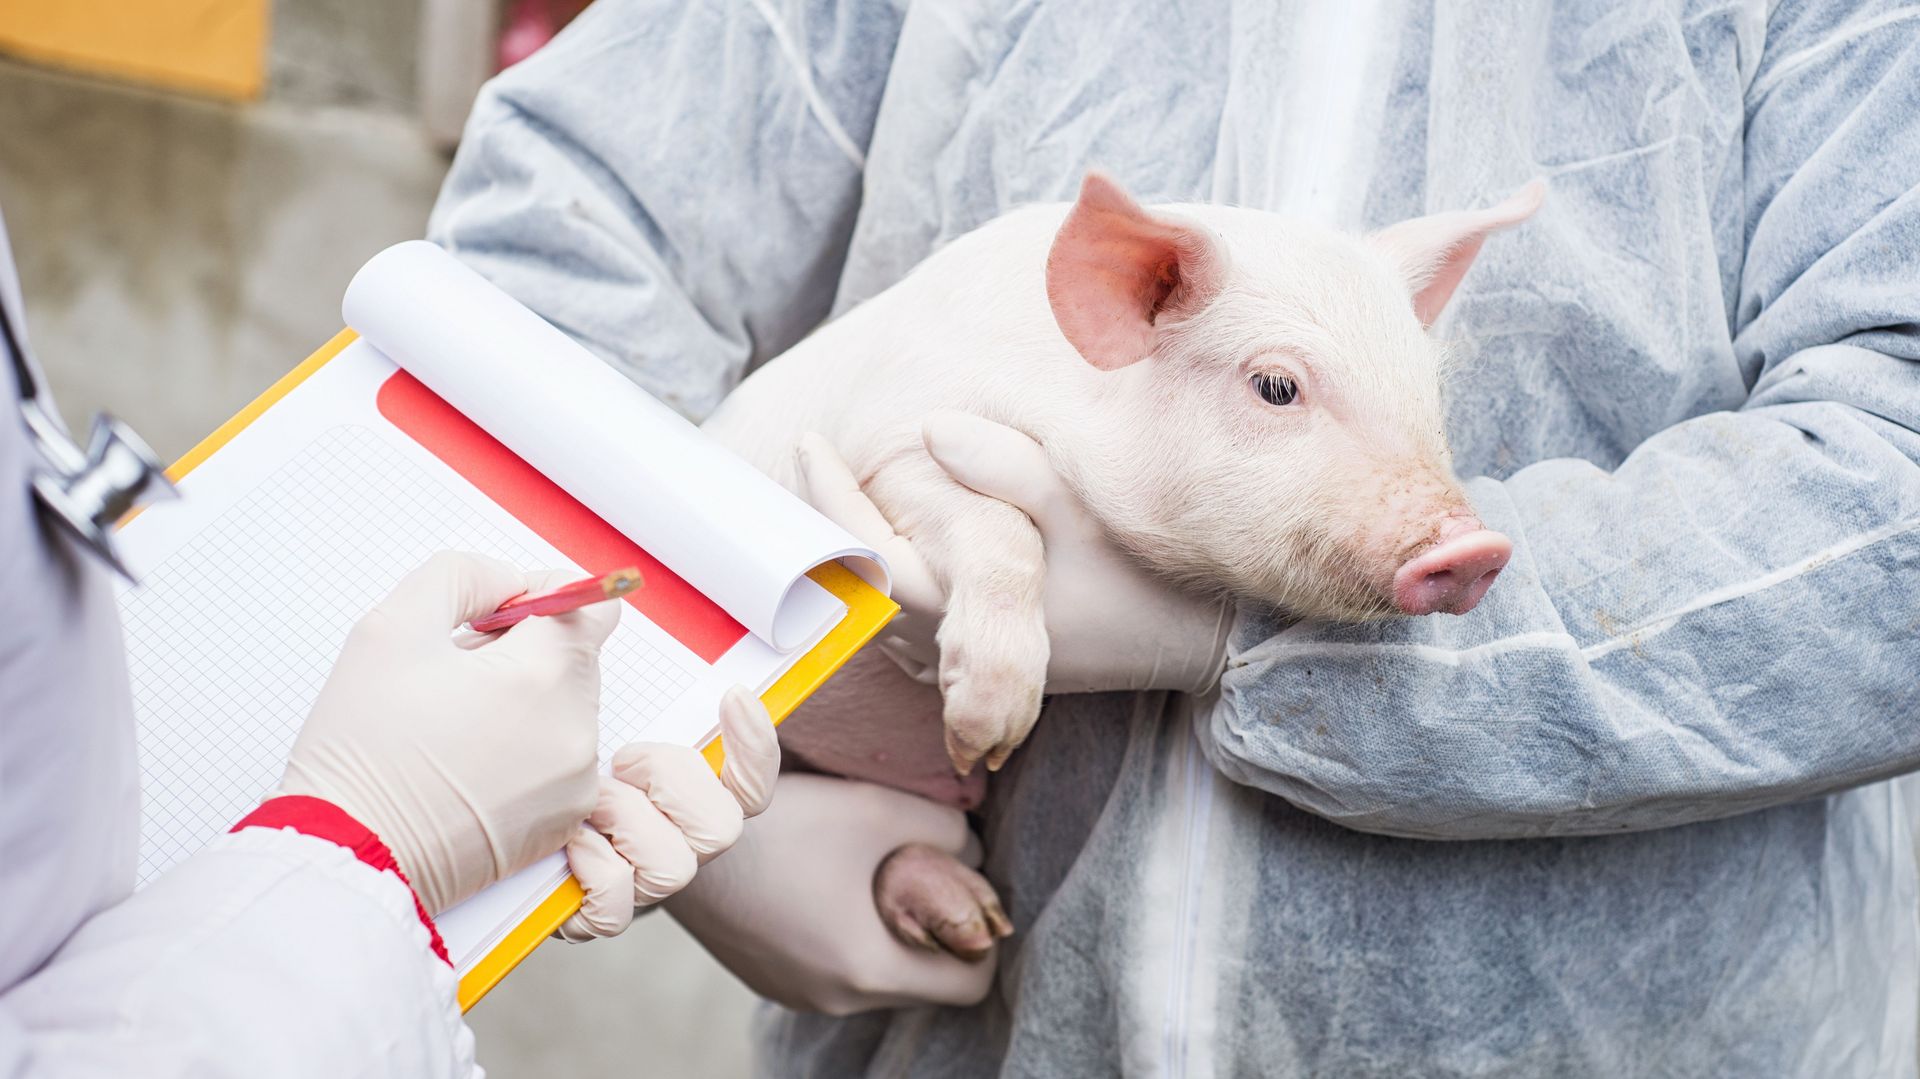 Schweinemast braucht keine Antibiotika - Fiktion oder Realität?